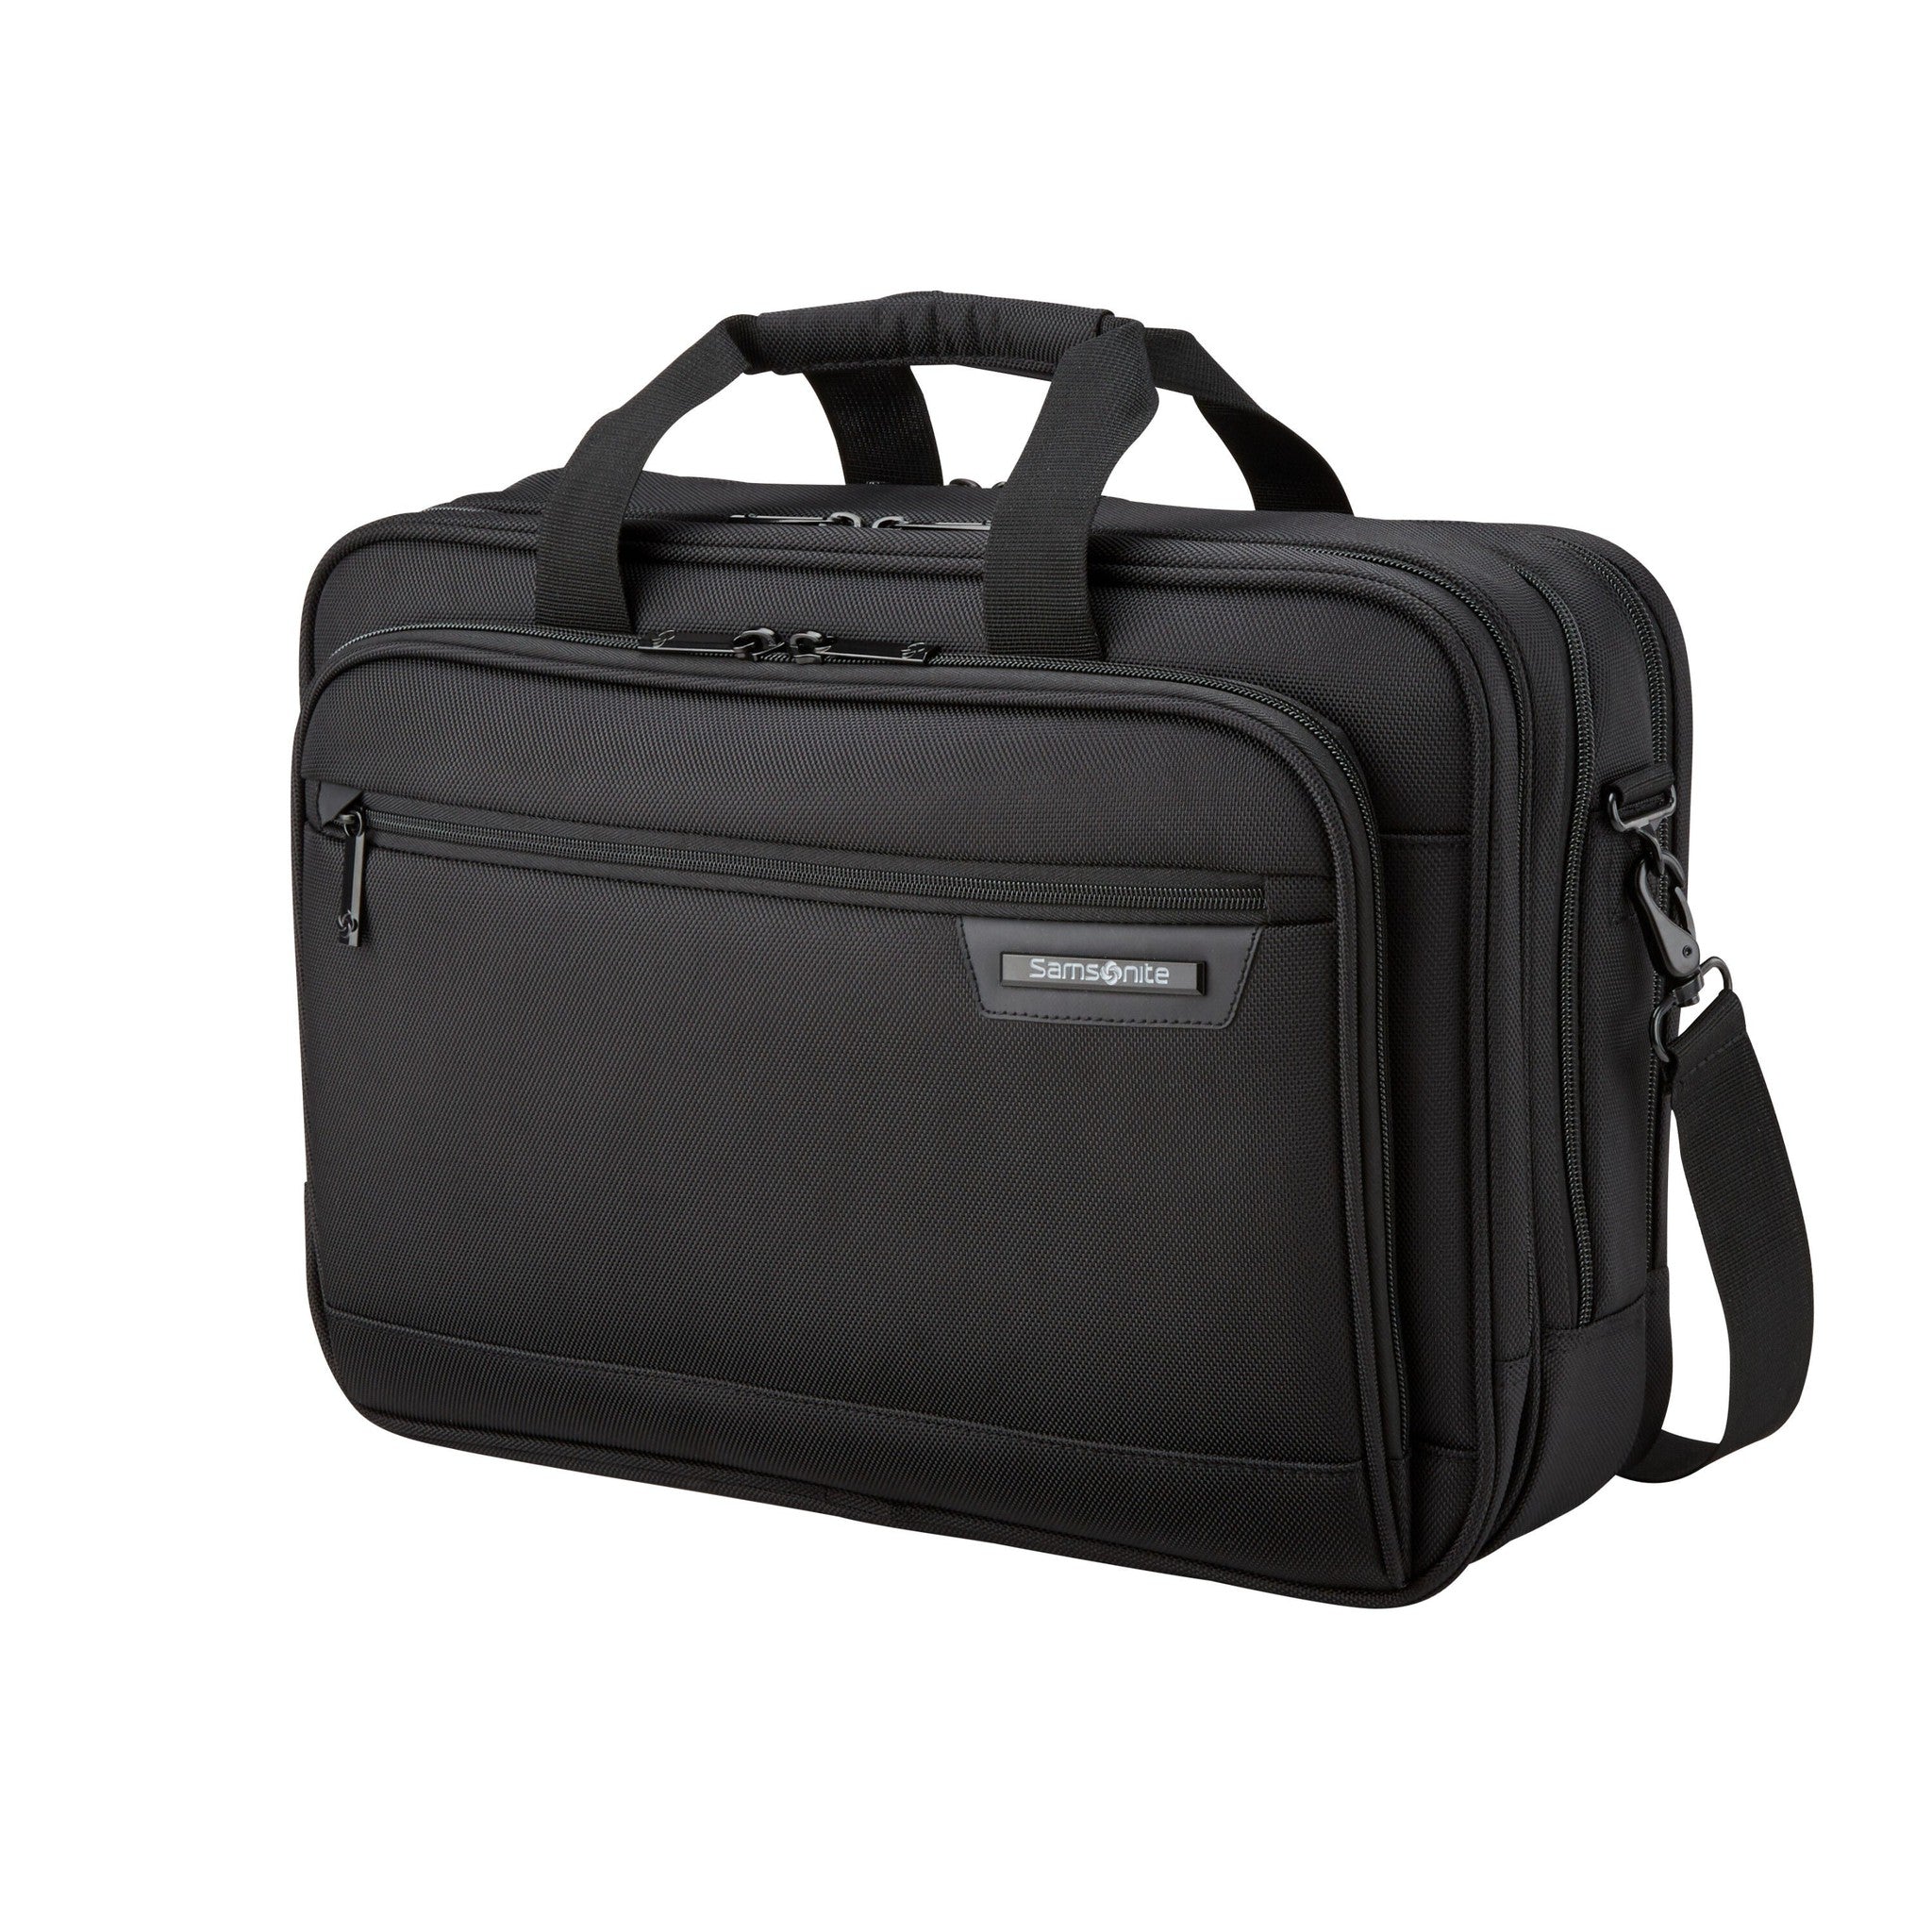 Samsonite Classic Business 2.0 3 Compartment Brief – Luggage Pros